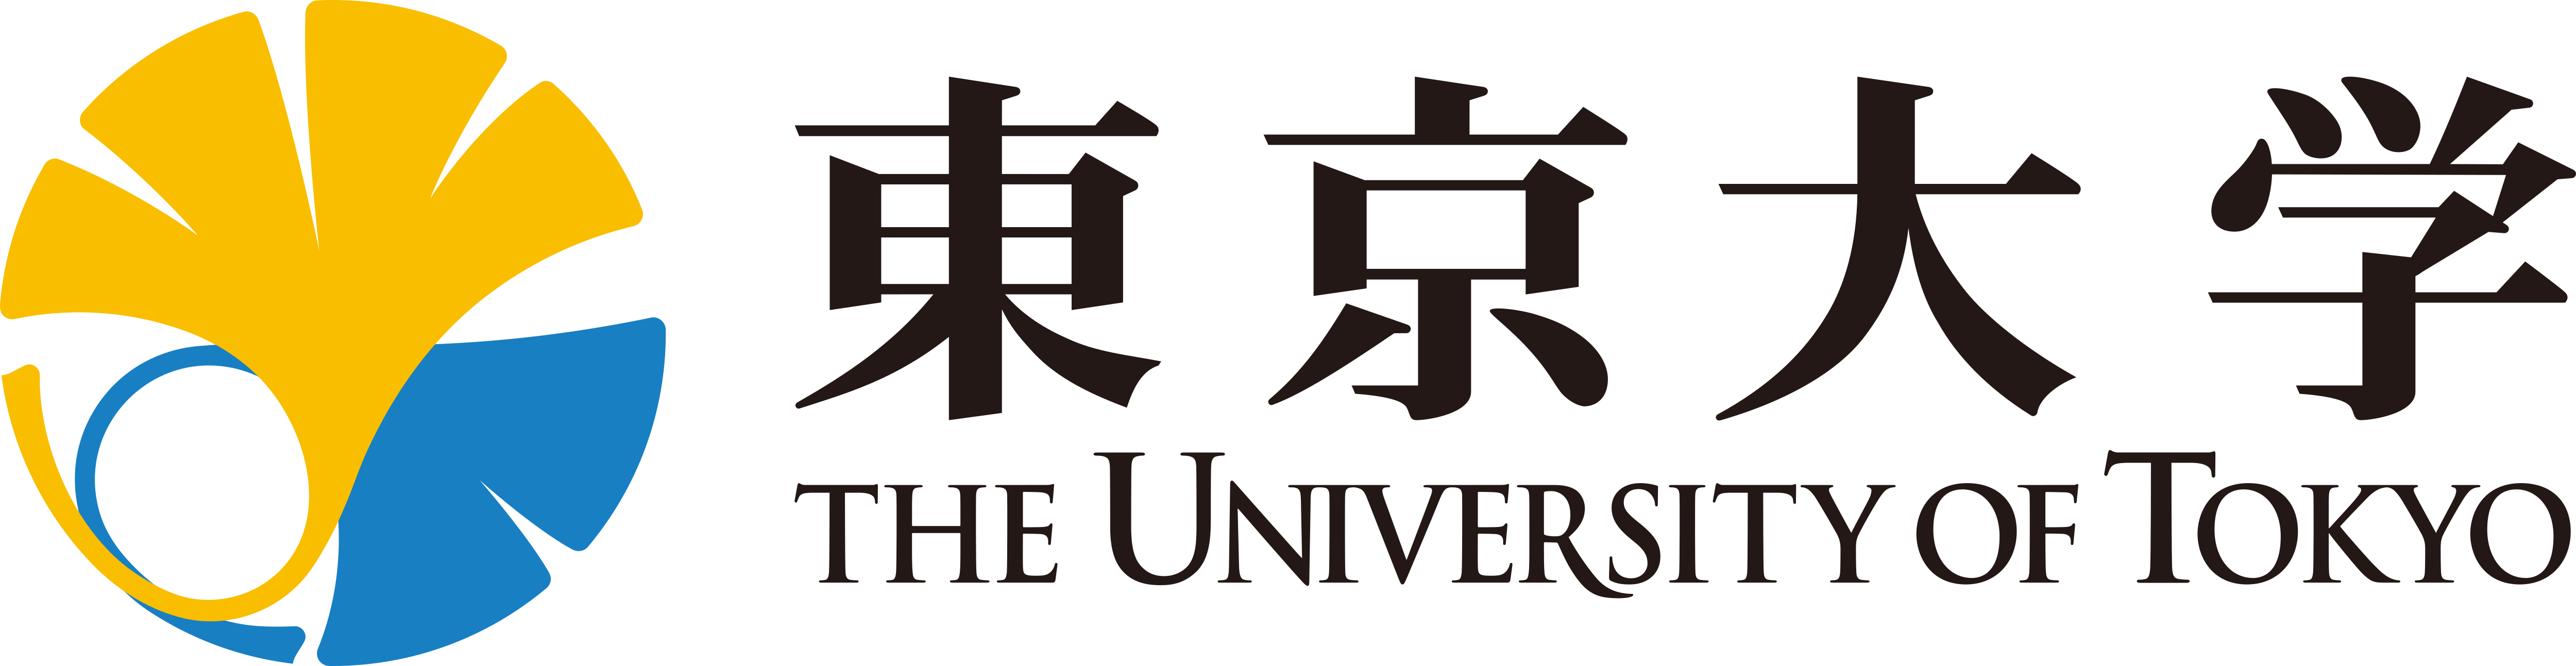 University of Tokyo – Logos Download